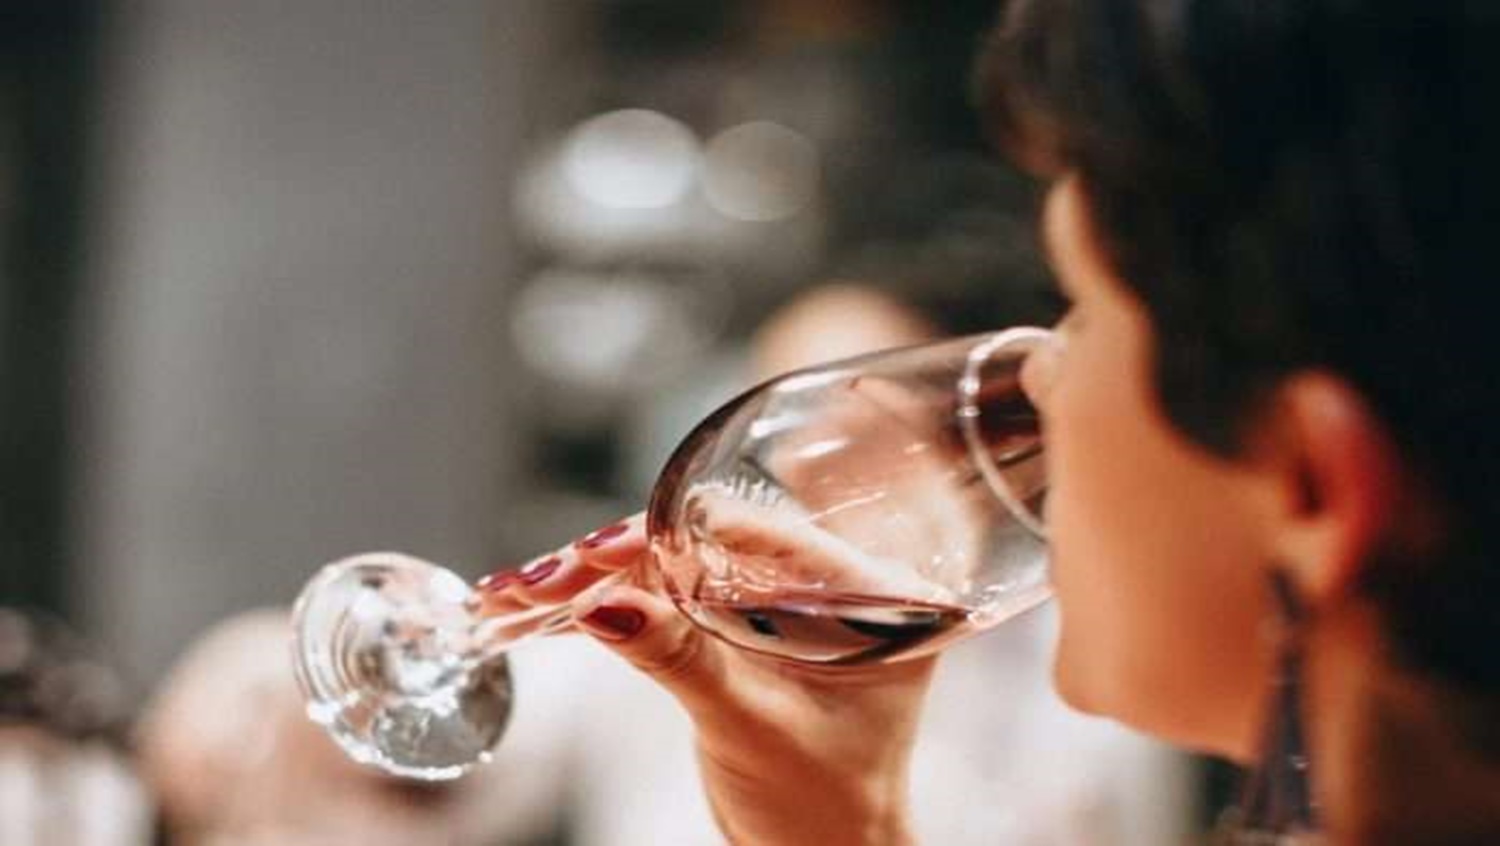 NOTÍCIA BOA: Estudo científico mostra que vinho reduz riscos de Covid-19